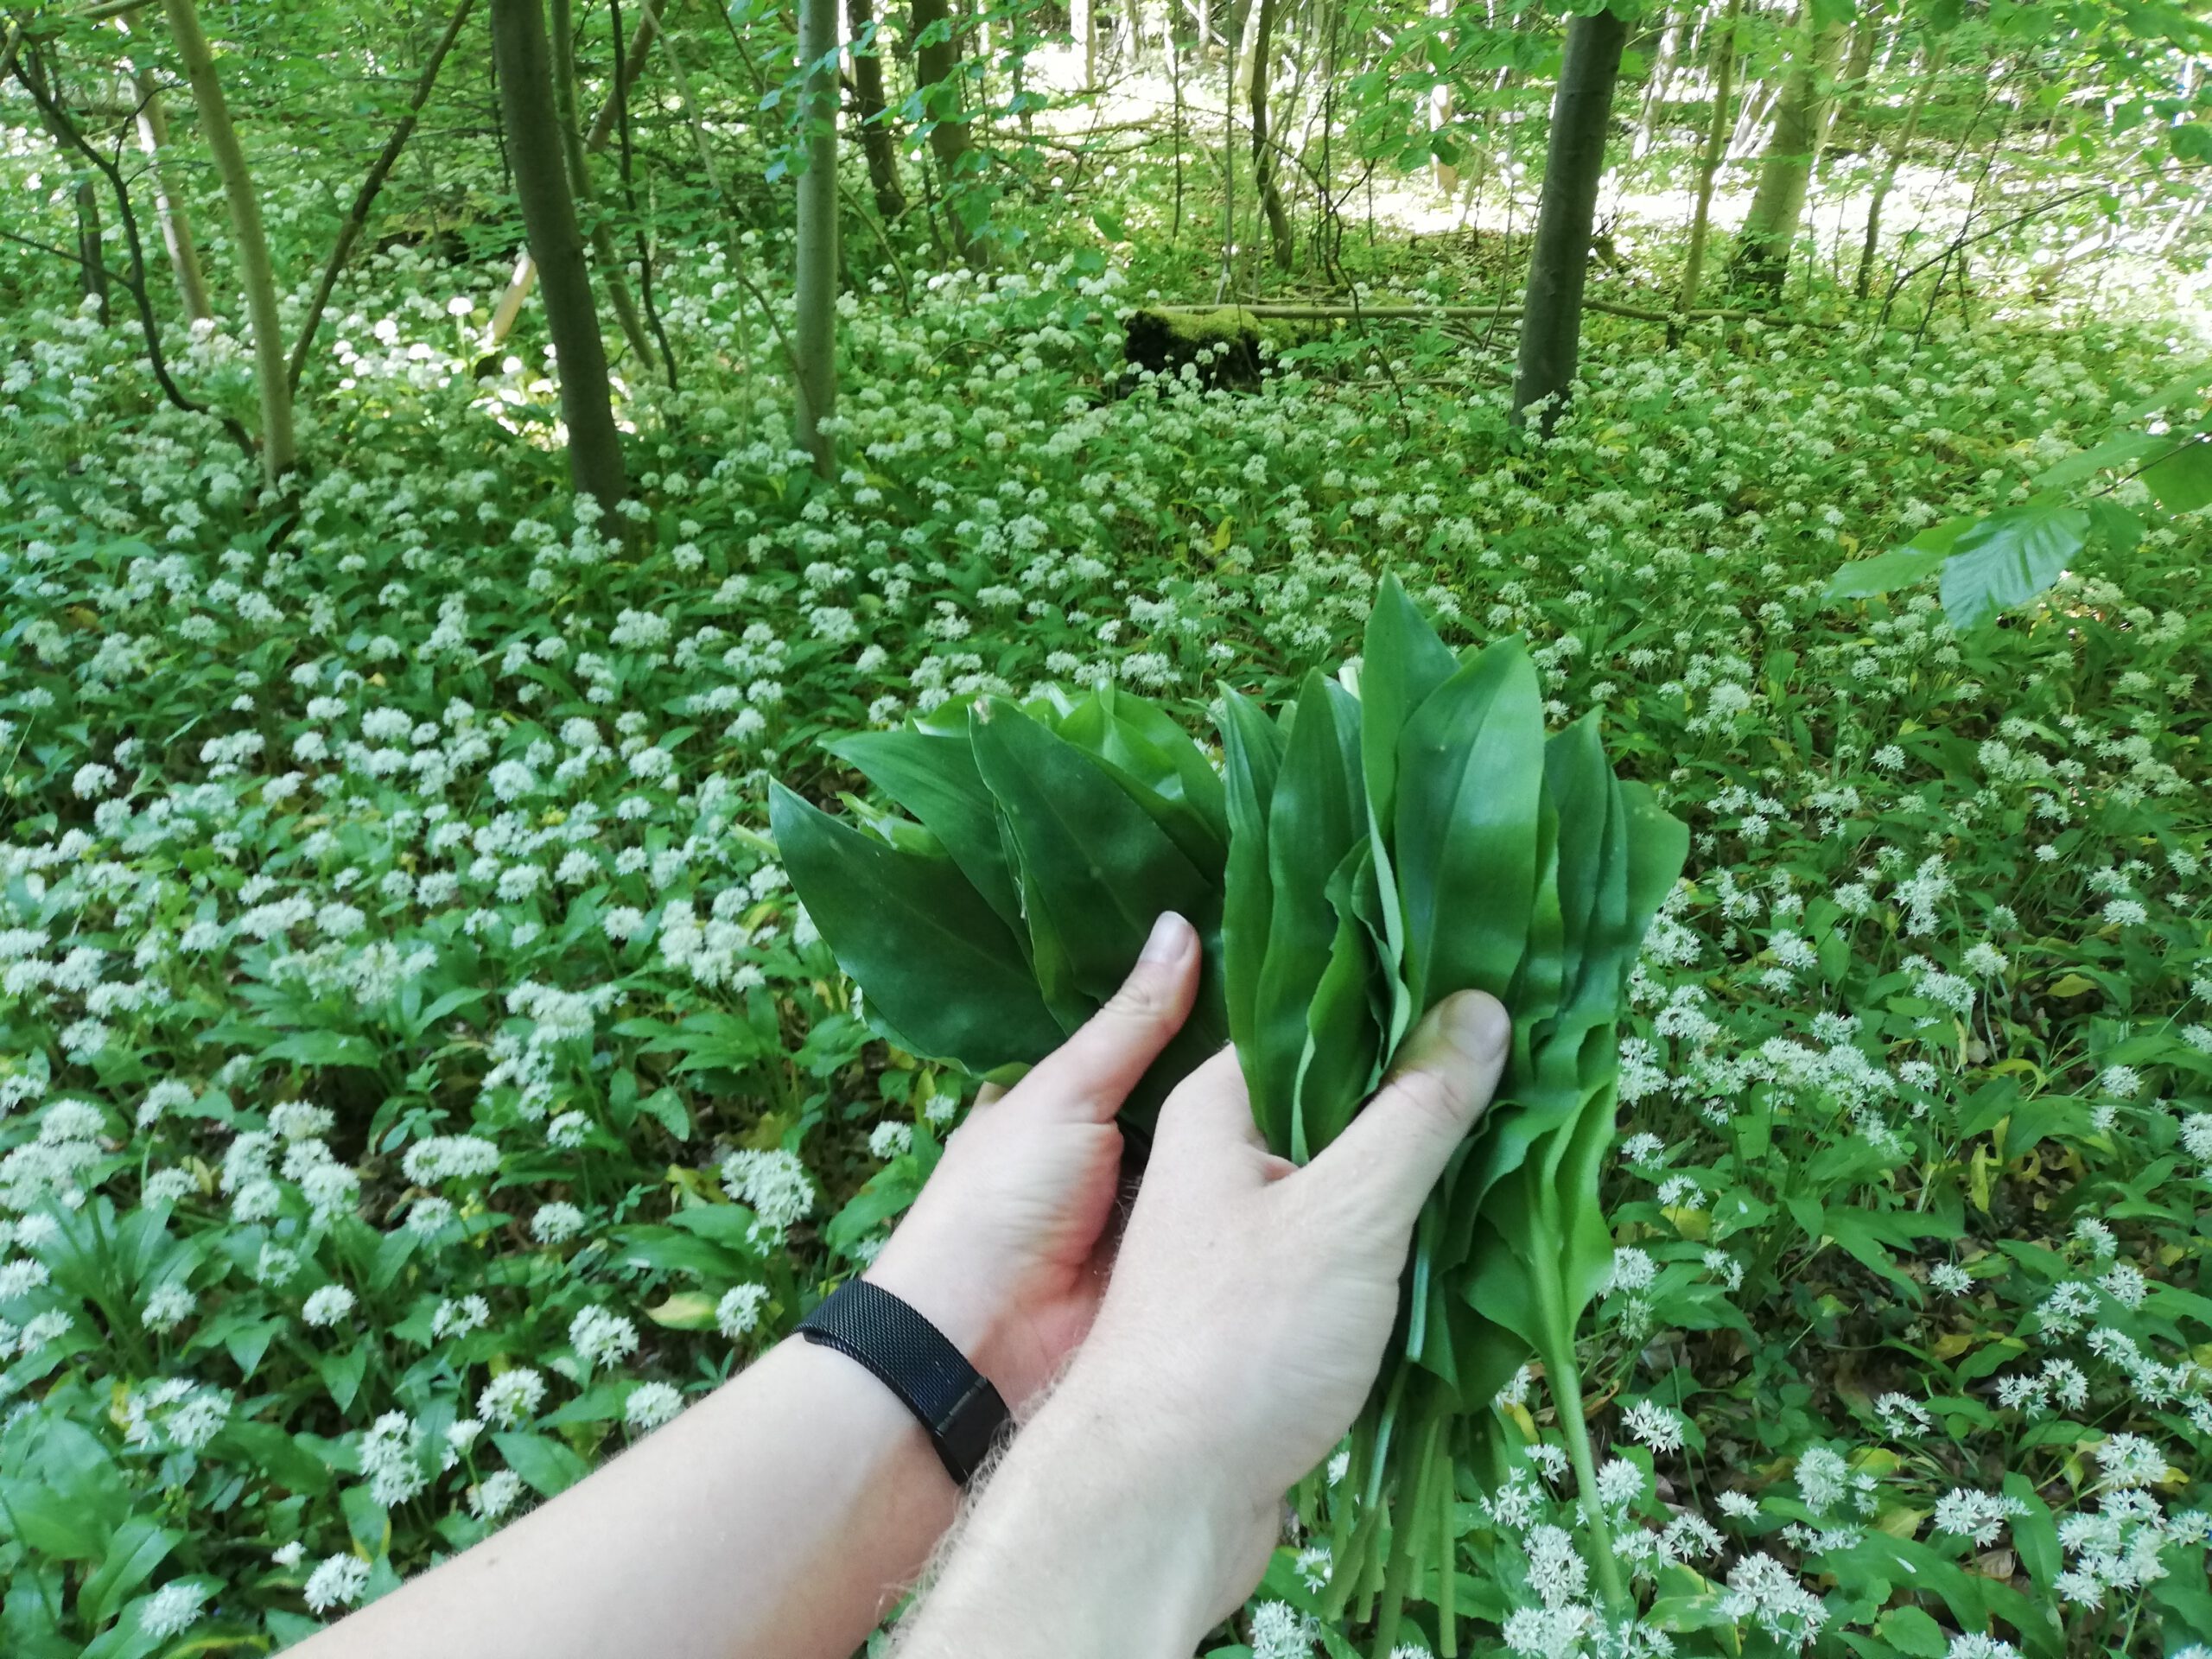 Gather wild garlic in the Göttinger forest